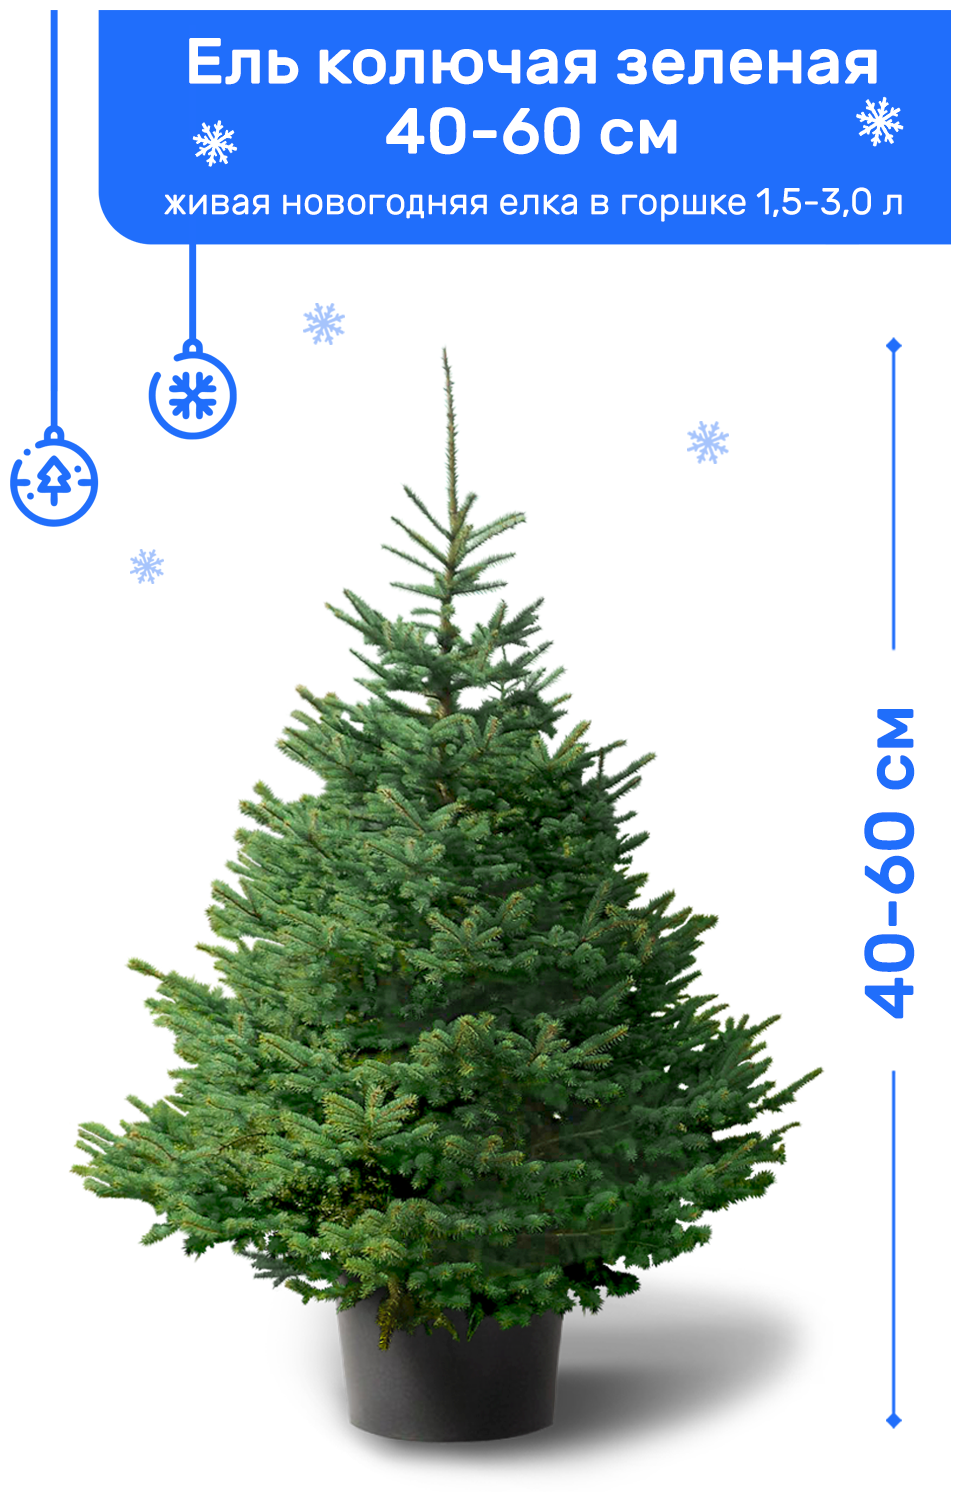 Ель Колючая Зеленая (Американская) живая новогодняя елка в пластиковом горшке